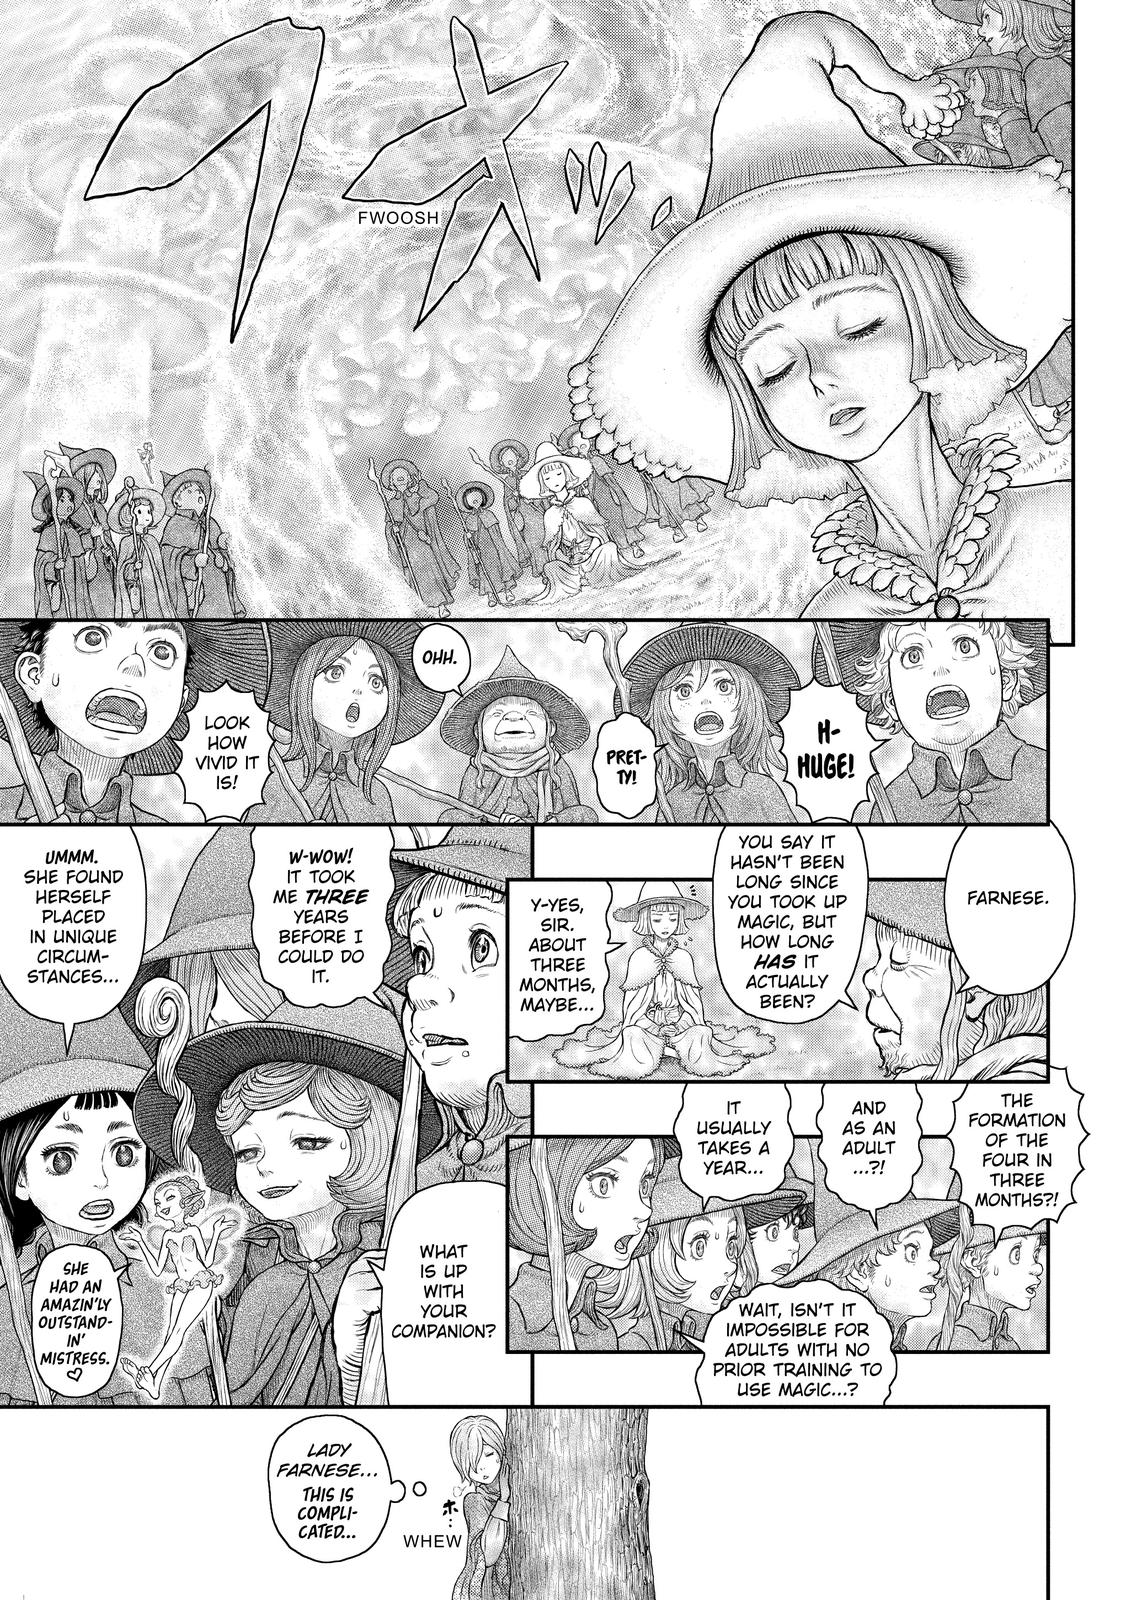 Berserk Manga Chapter 360 image 07